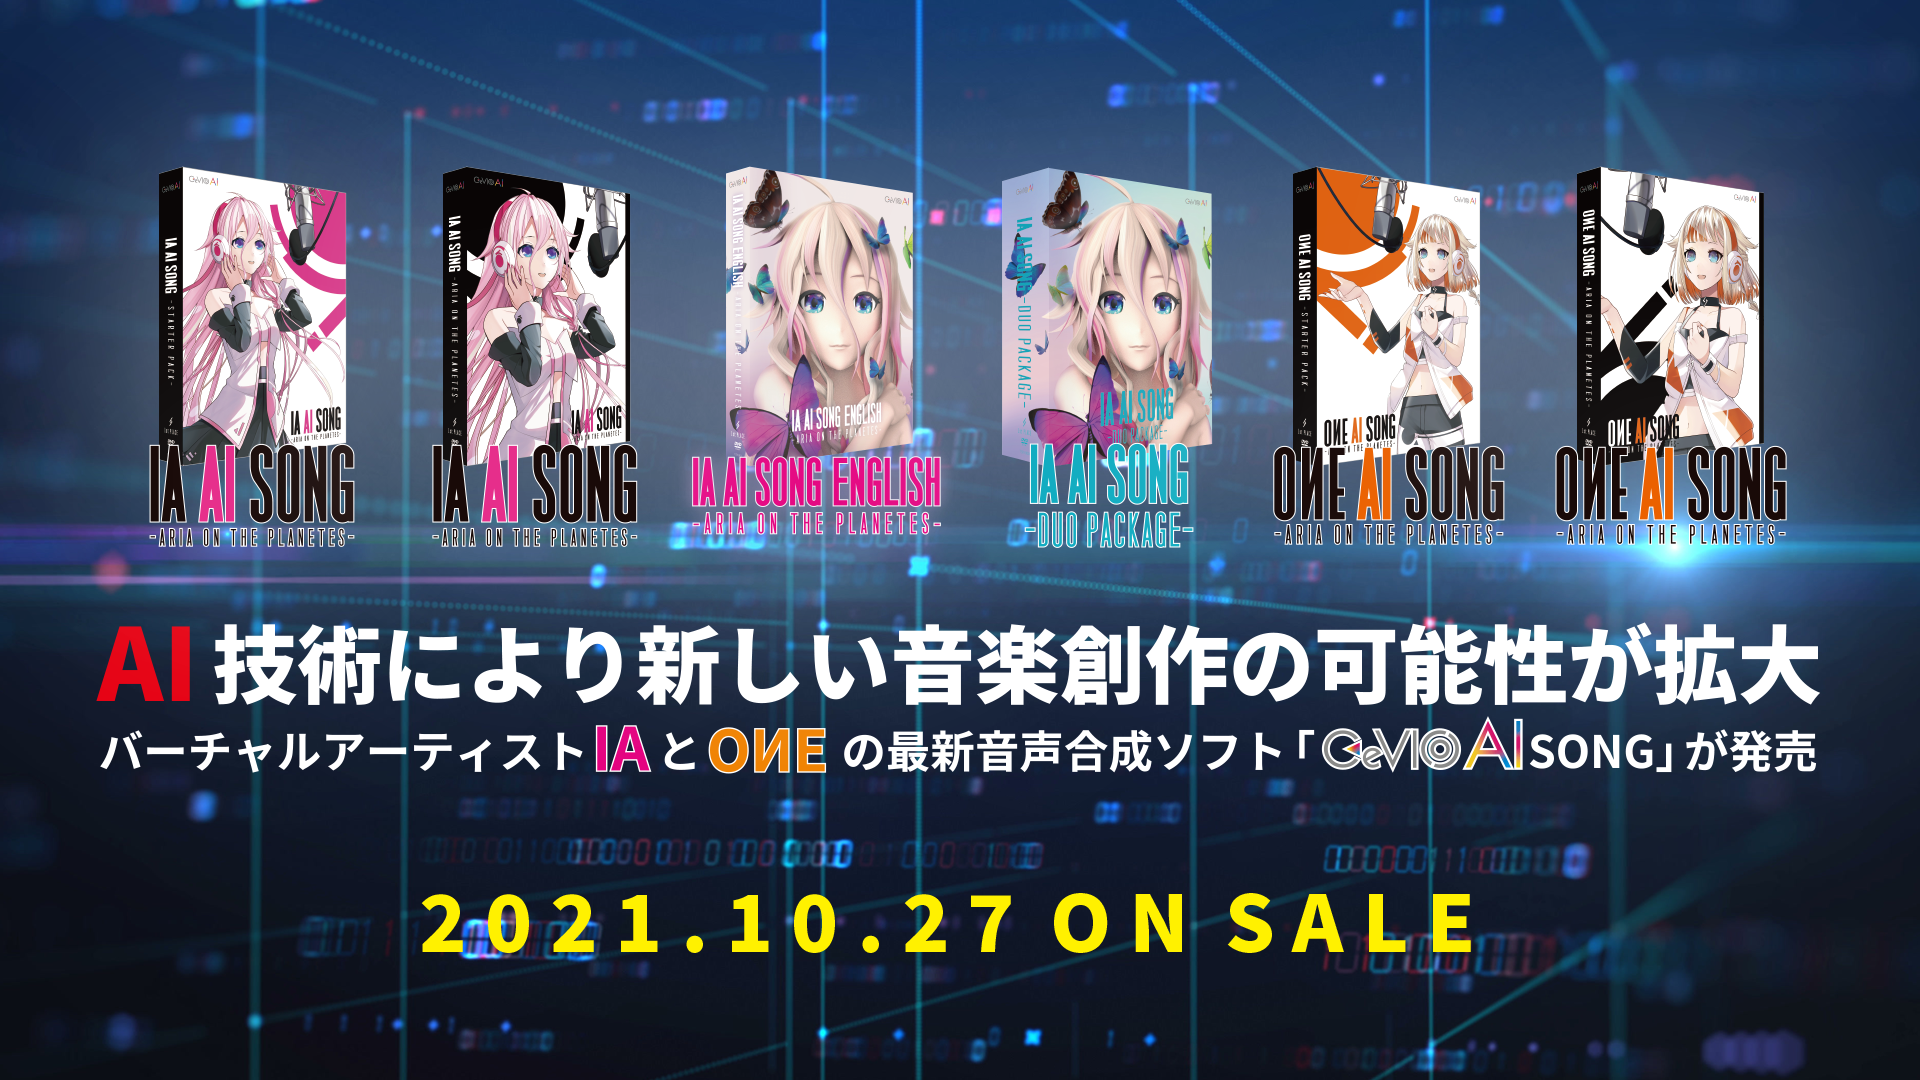 ギフト 初回特典付属 1st PLACE OИE AI SONG - ARIA ON THE PLANETES CeVIO ソングボイス11 880円